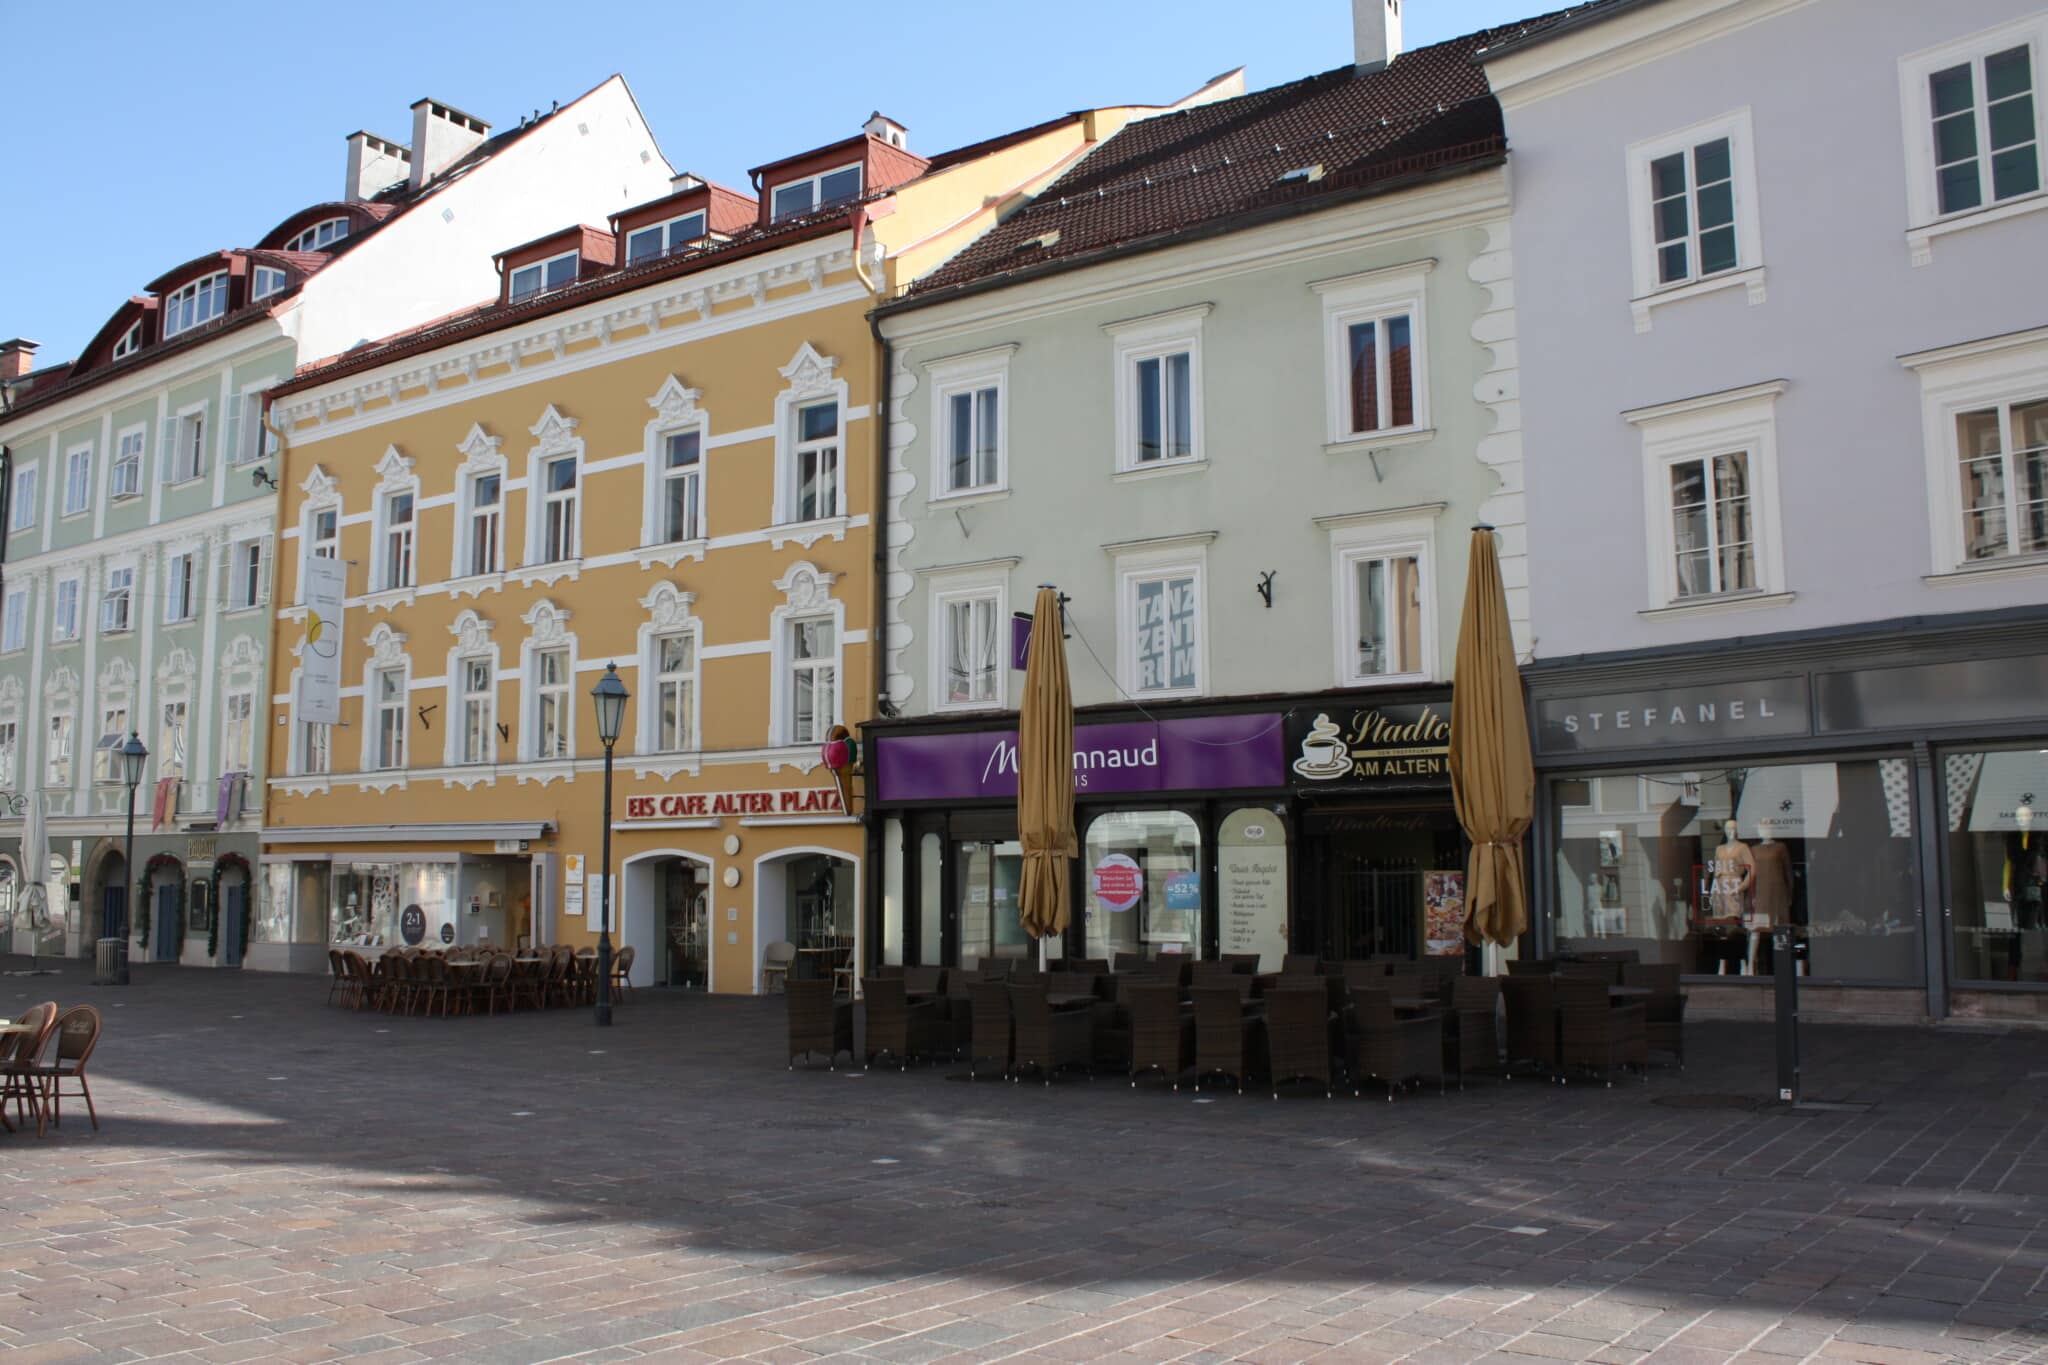 Das Modegeschäft Stefanel am Alten Platz in Klagenfurt schließt.